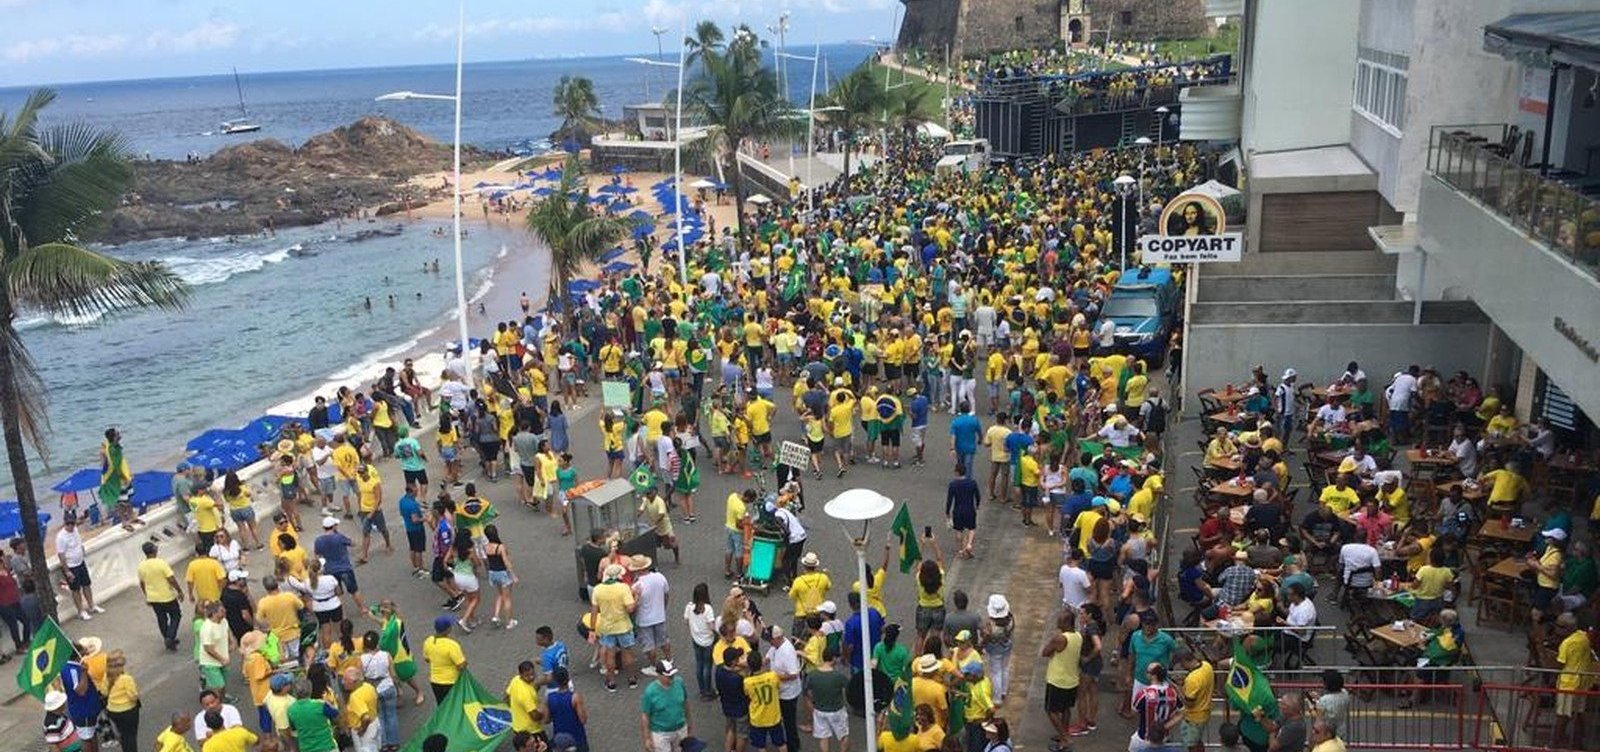 Ato pró-Bolsonaro leva centenas de pessoas à Barra em Salvador